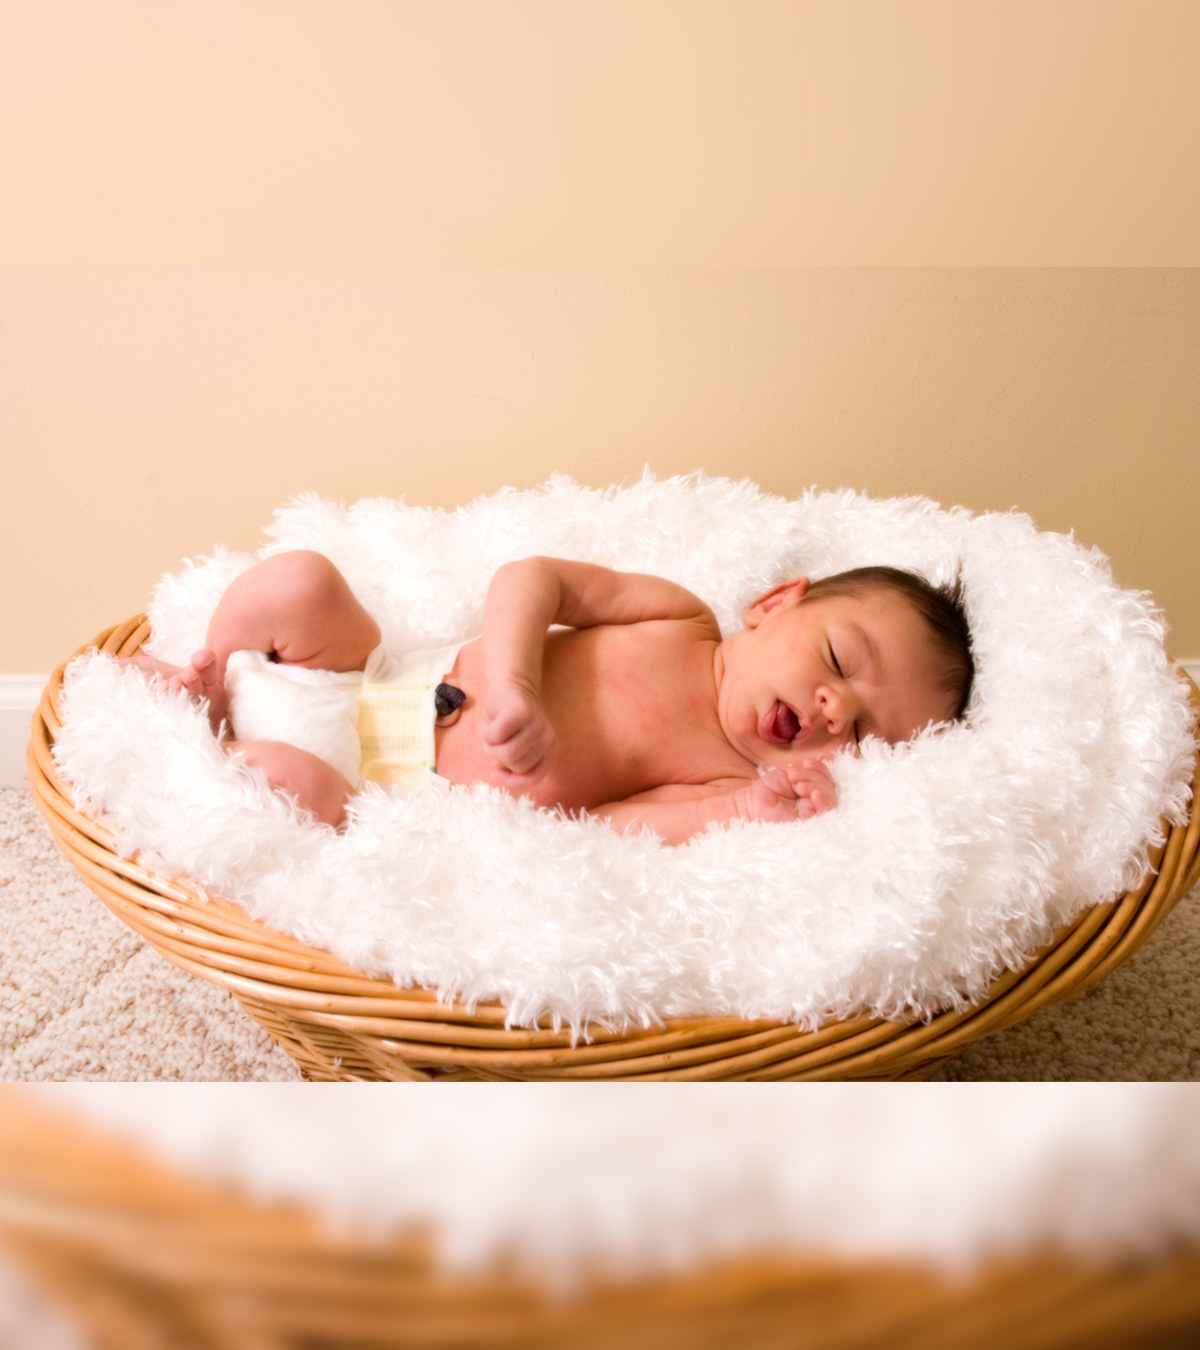 婴儿脐部肉芽肿——原因、症状和治疗